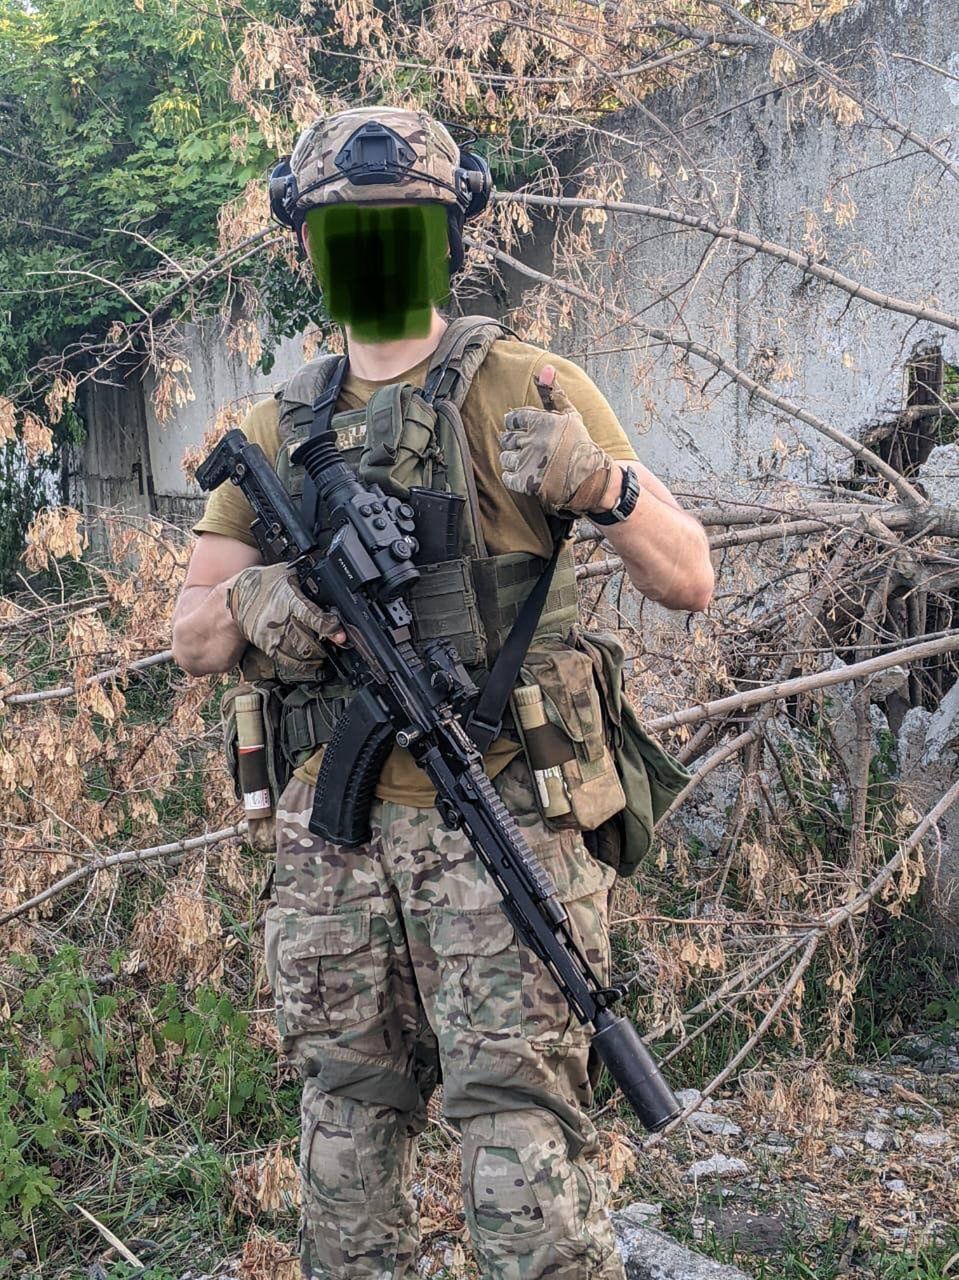 Rosyjski żołnierz specnazu z ciekawym wyposażeniem.